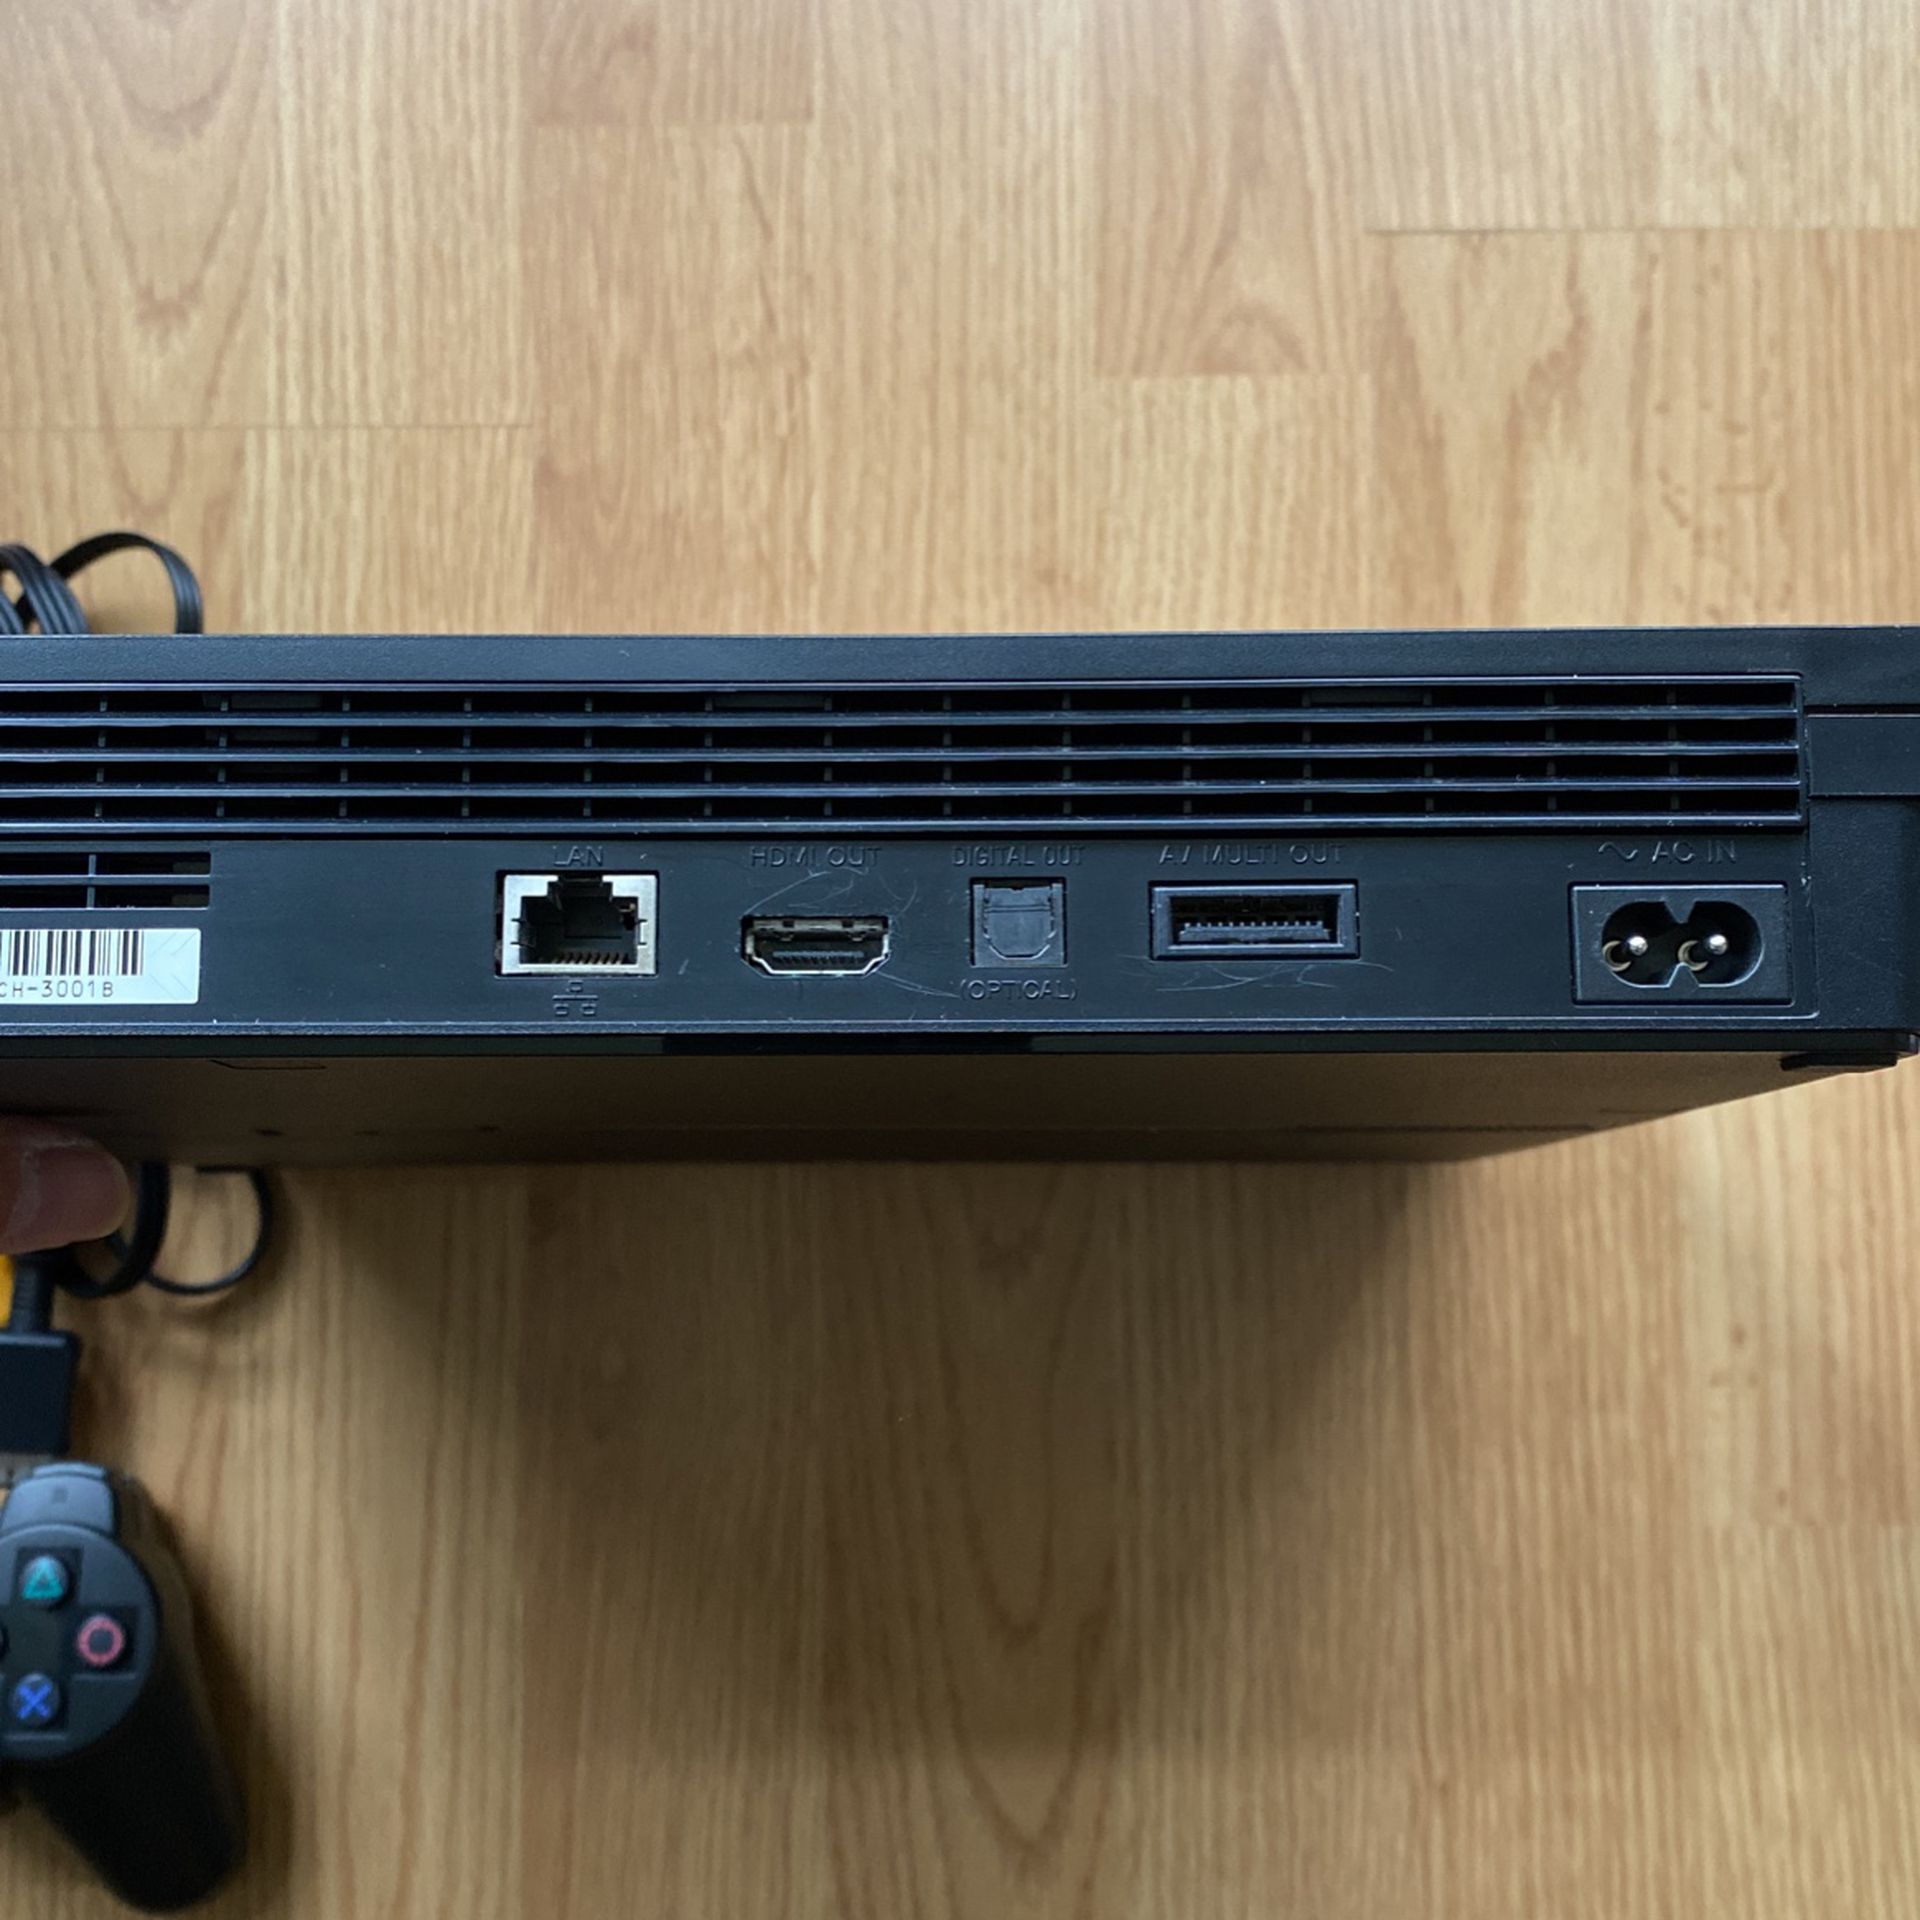 PlayStation 3 Console Model CECH-3001B 320GB